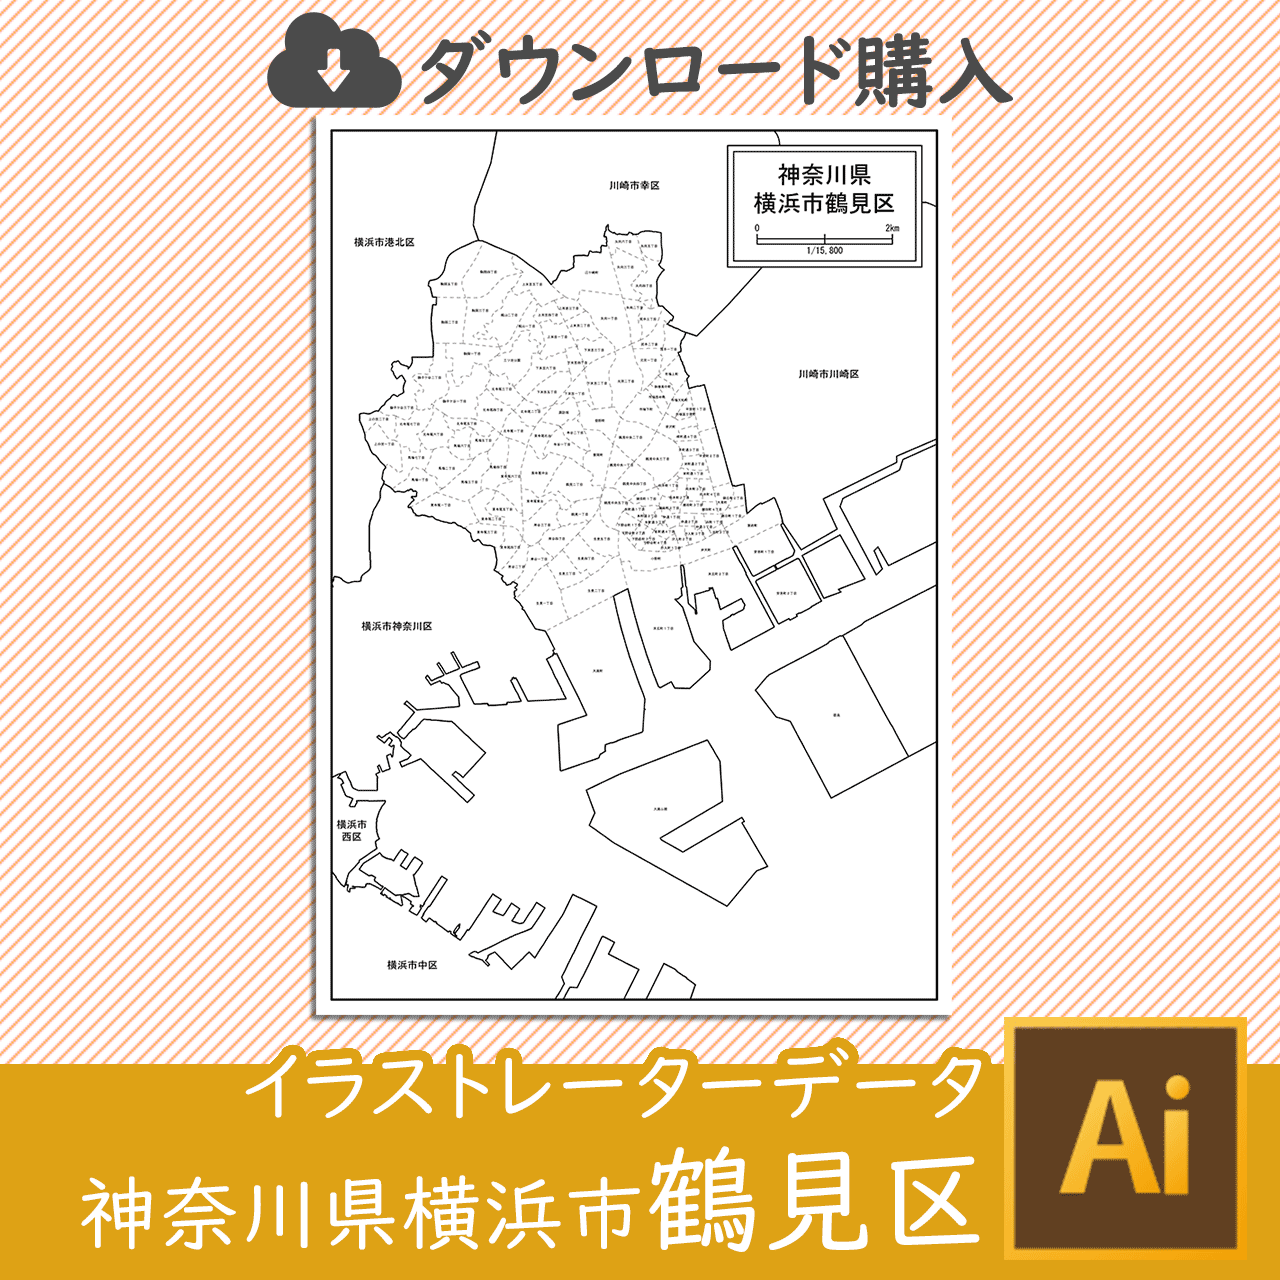 横浜市鶴見区のaiデータのサムネイル画像